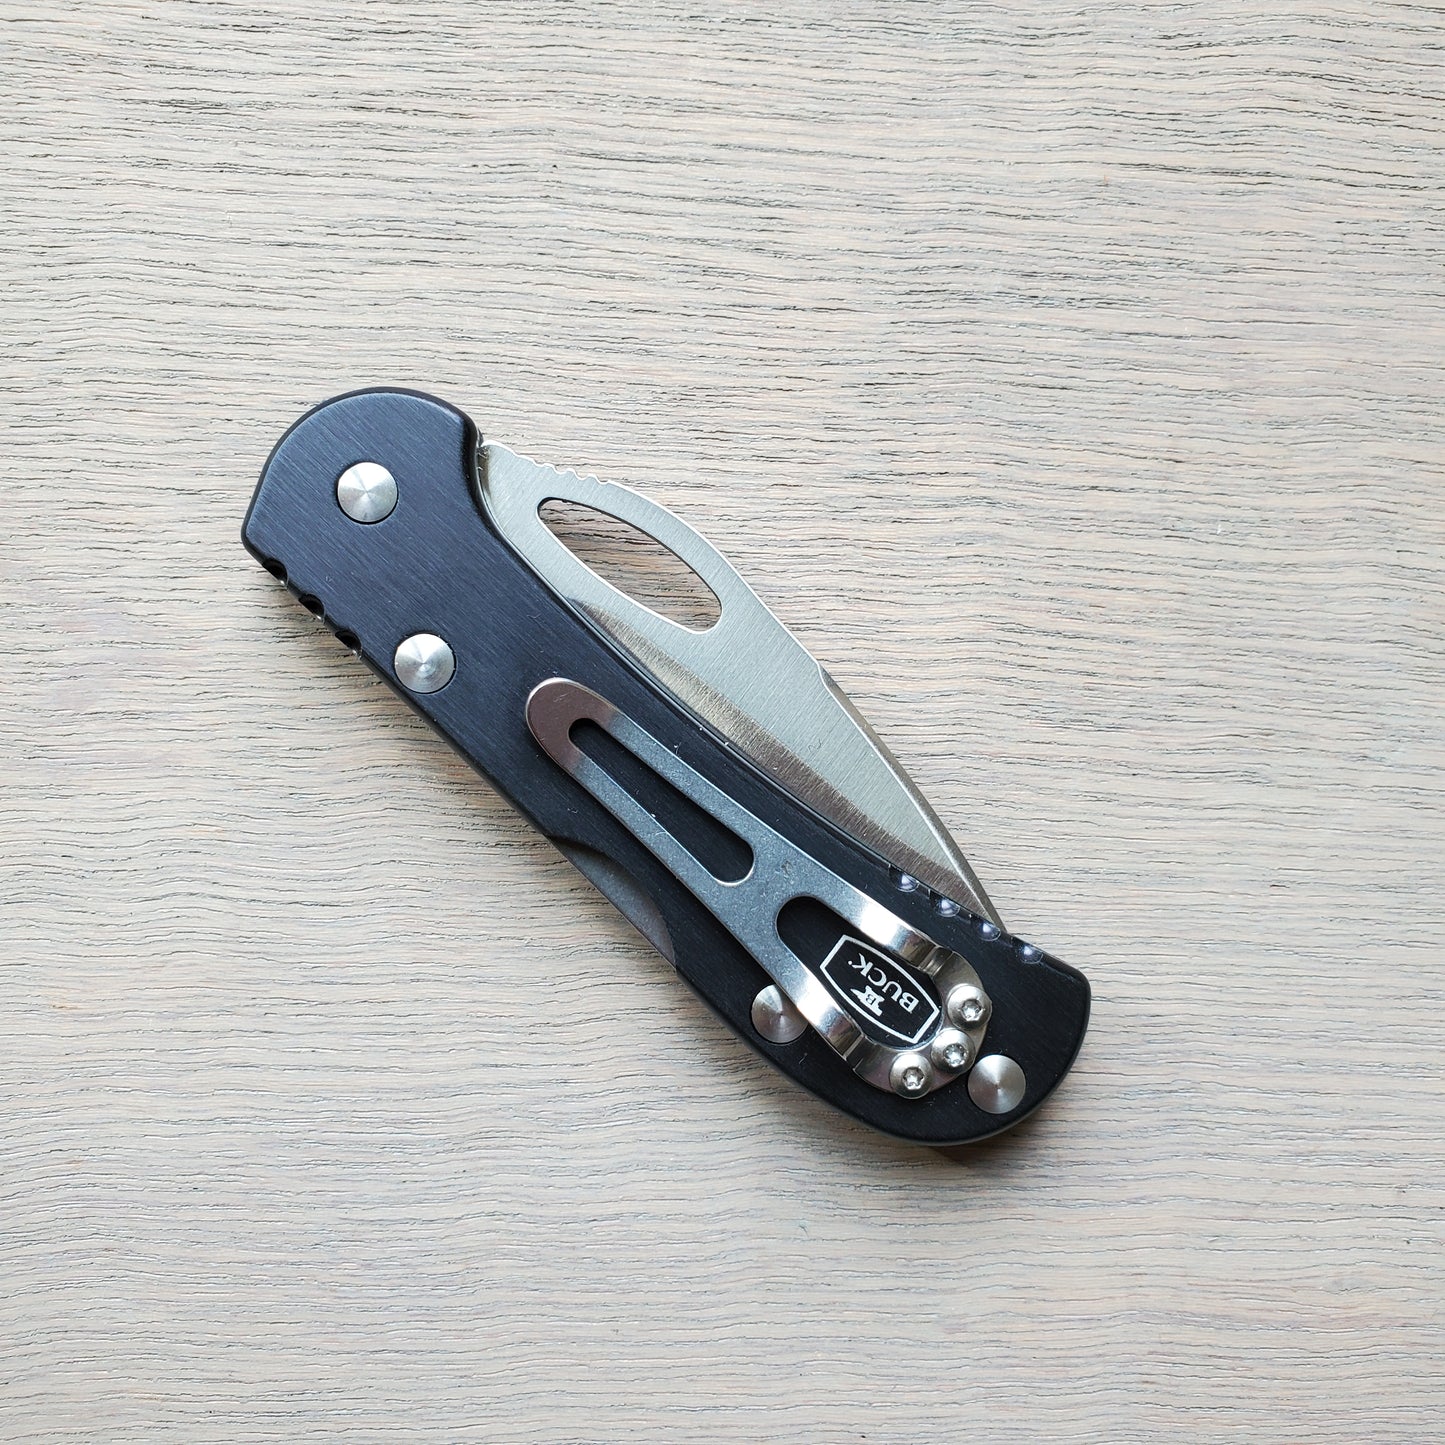 Buck 726 Mini Spitfire Lockback 2.75" Pocket Knife - Black